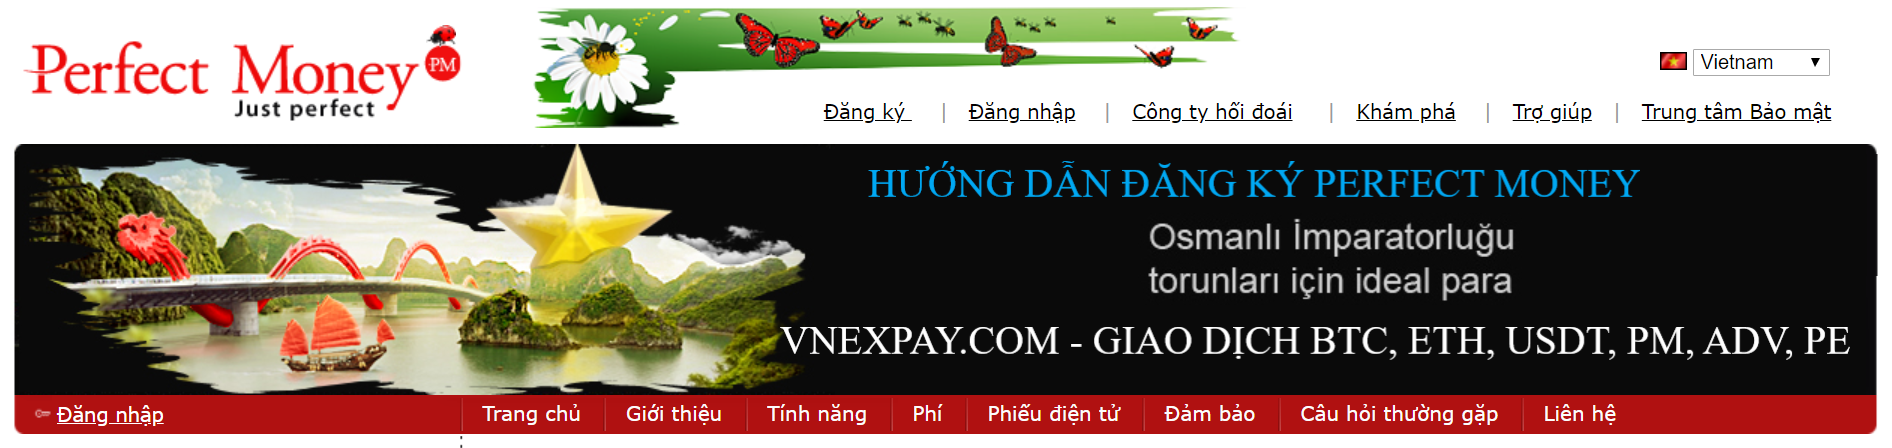 Perfect Money là gì - Hướng dẫn cách đăng ký và xác minh tài khoản tại Vnexpay.com